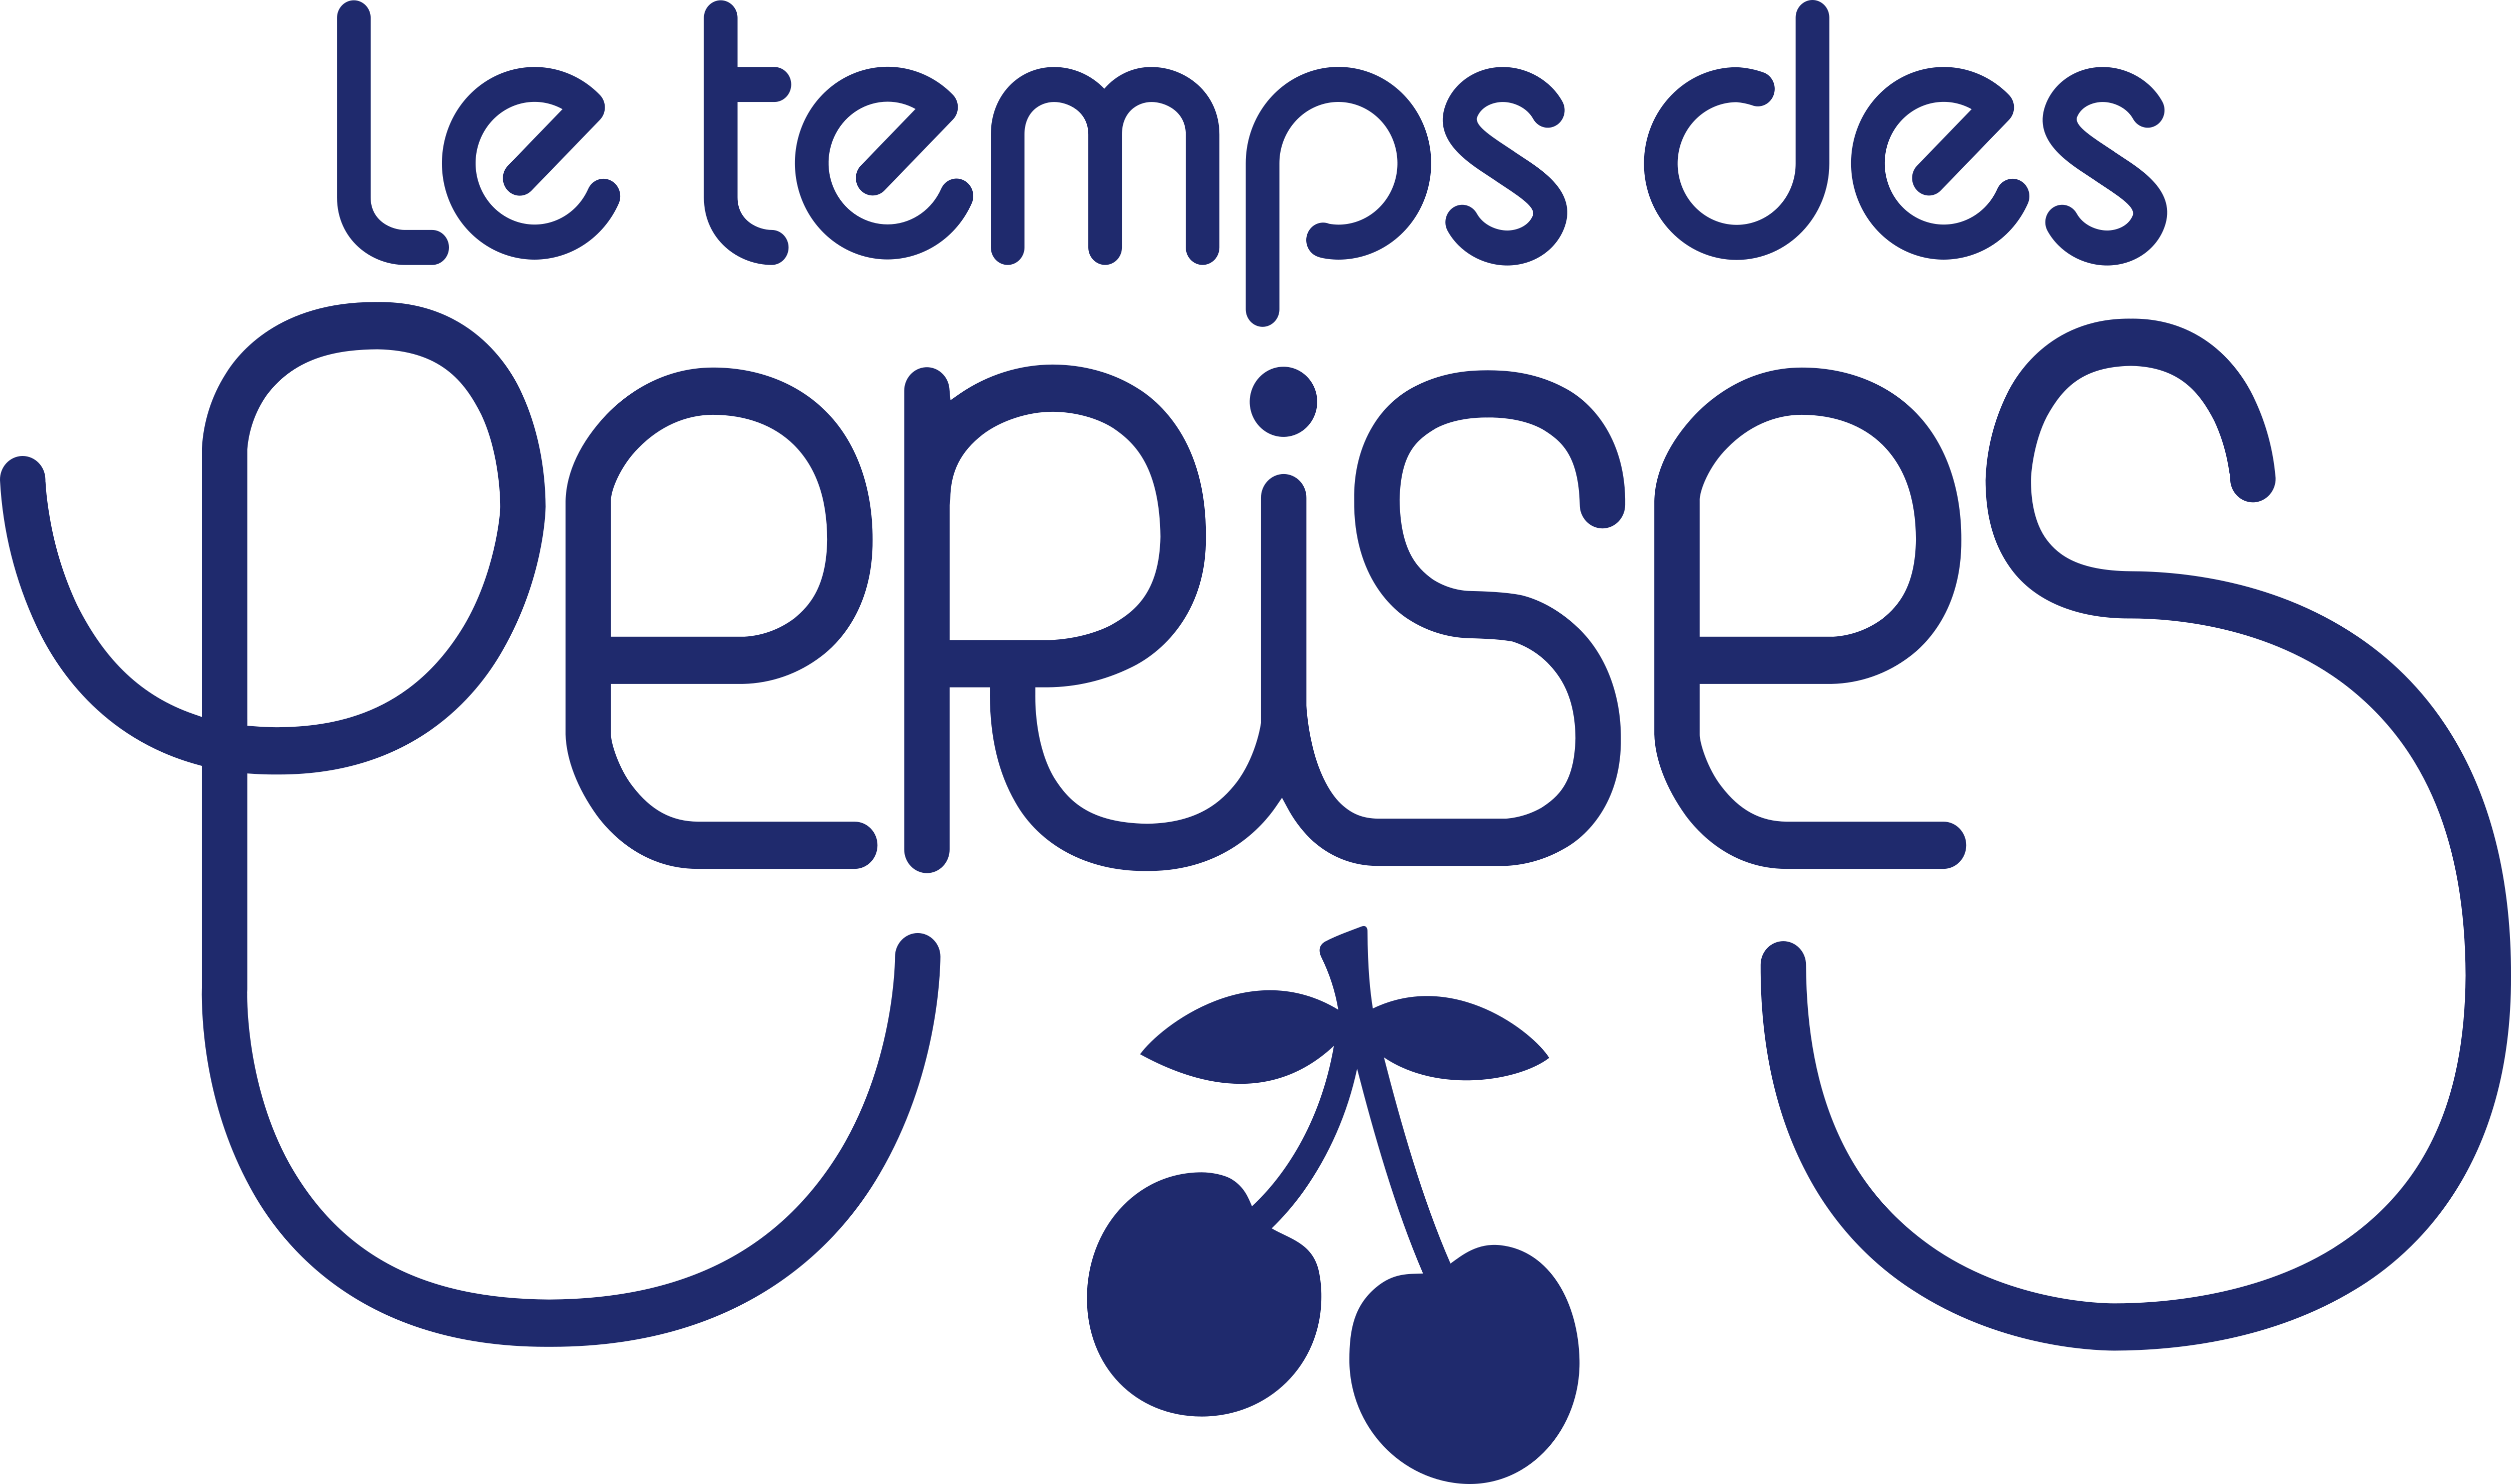 Tout temps. Le Temps des Perises одежда. Le Temps логотип. Le Temps des Cerises сумка. Le Temps Cerises кофе.